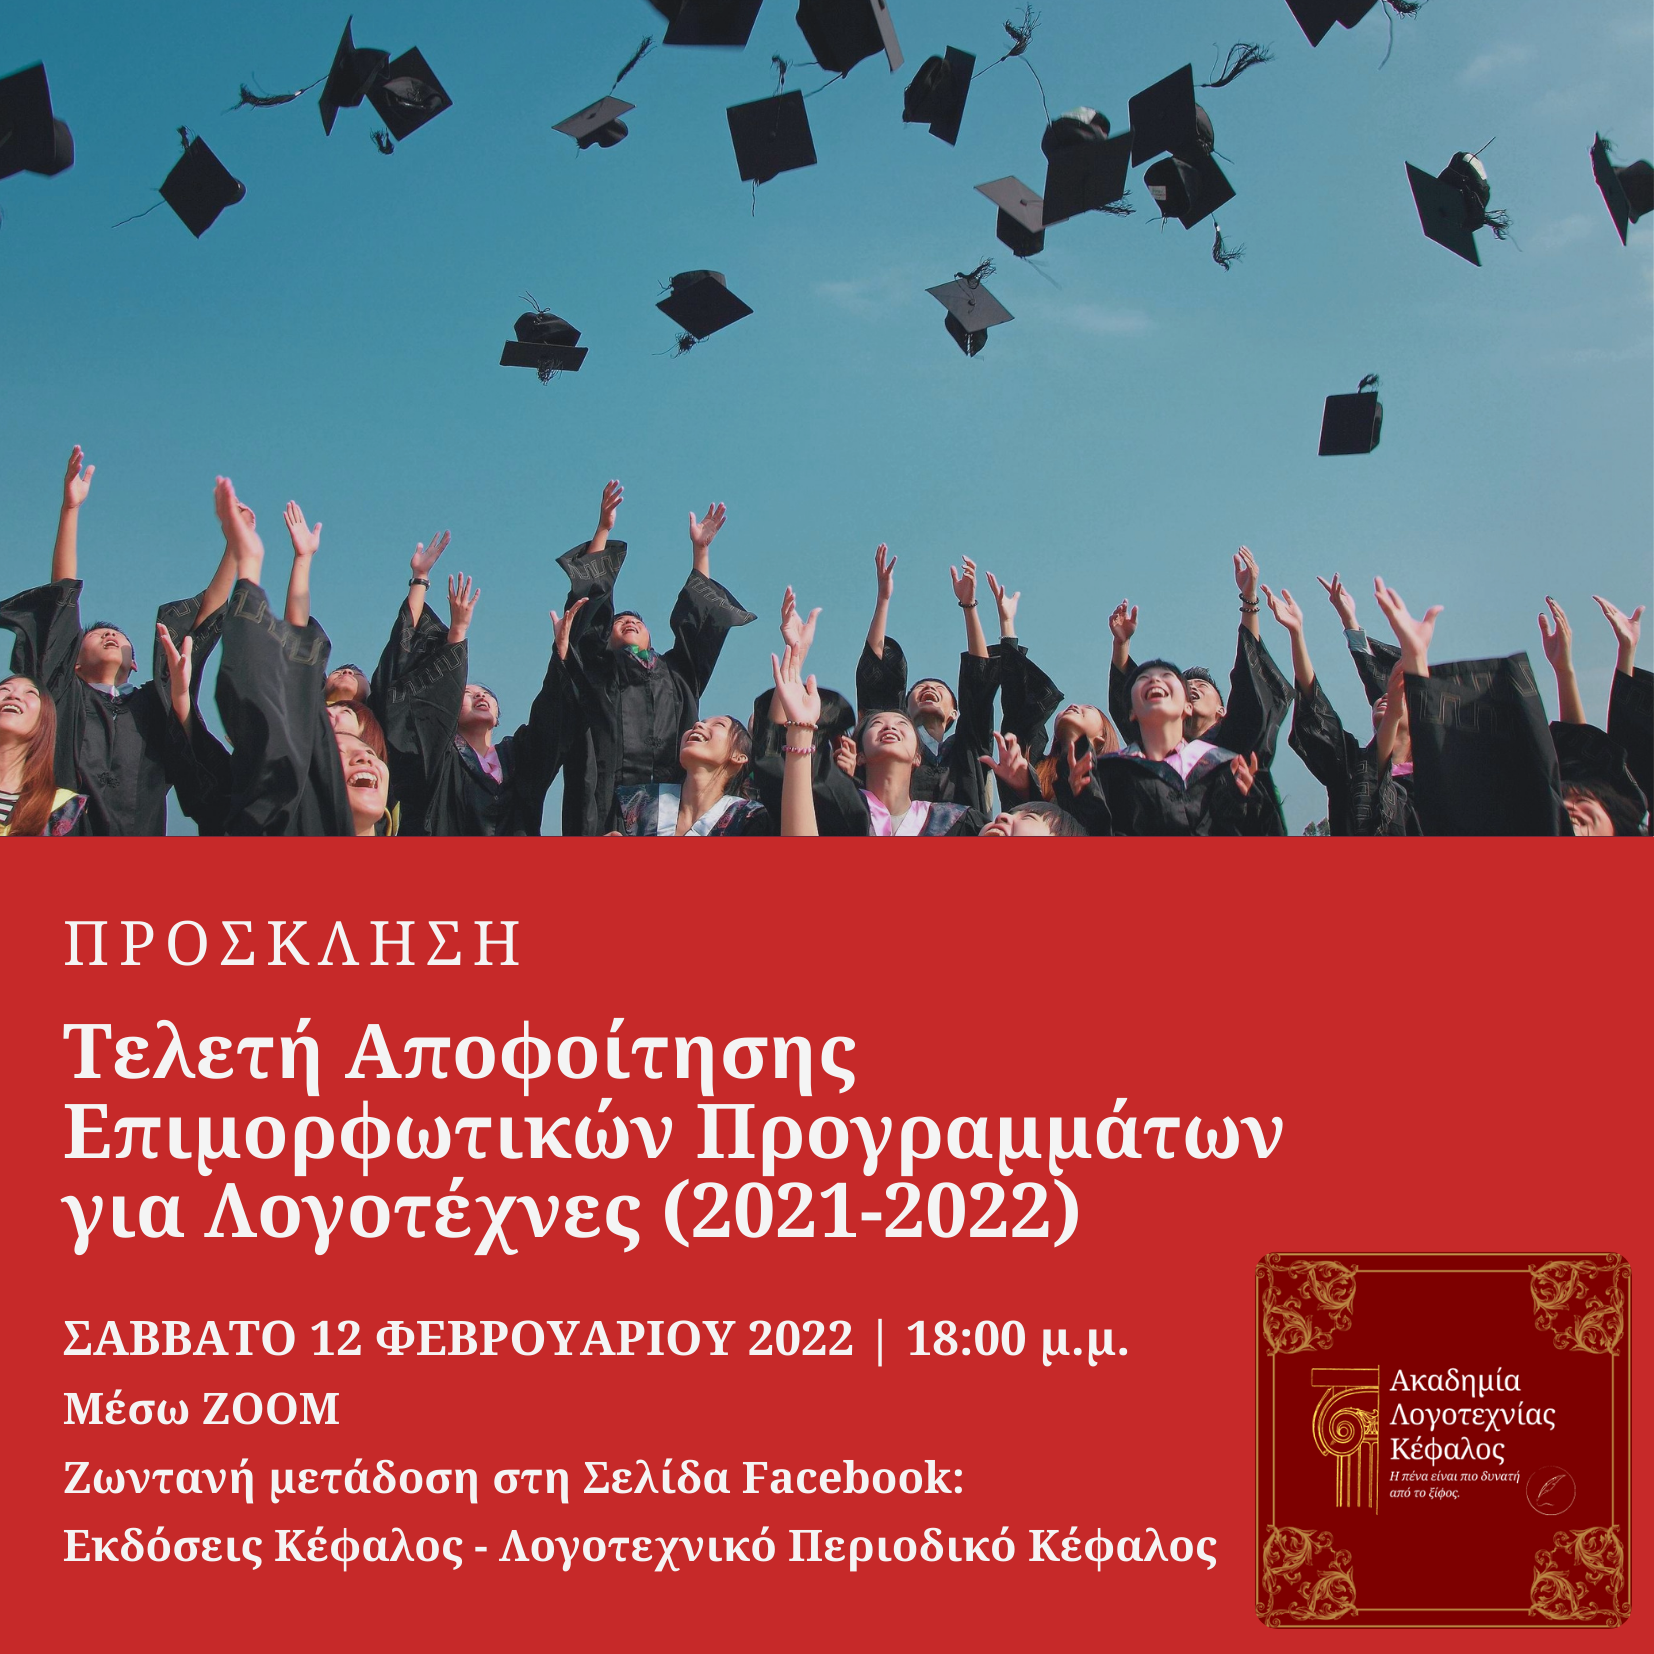 Πρόσκληση Τελετής Αποφοίτησης Επιμορφωτικών Προγραμμάτων «Ακαδημίας Λογοτεχνίας Κέφαλος»